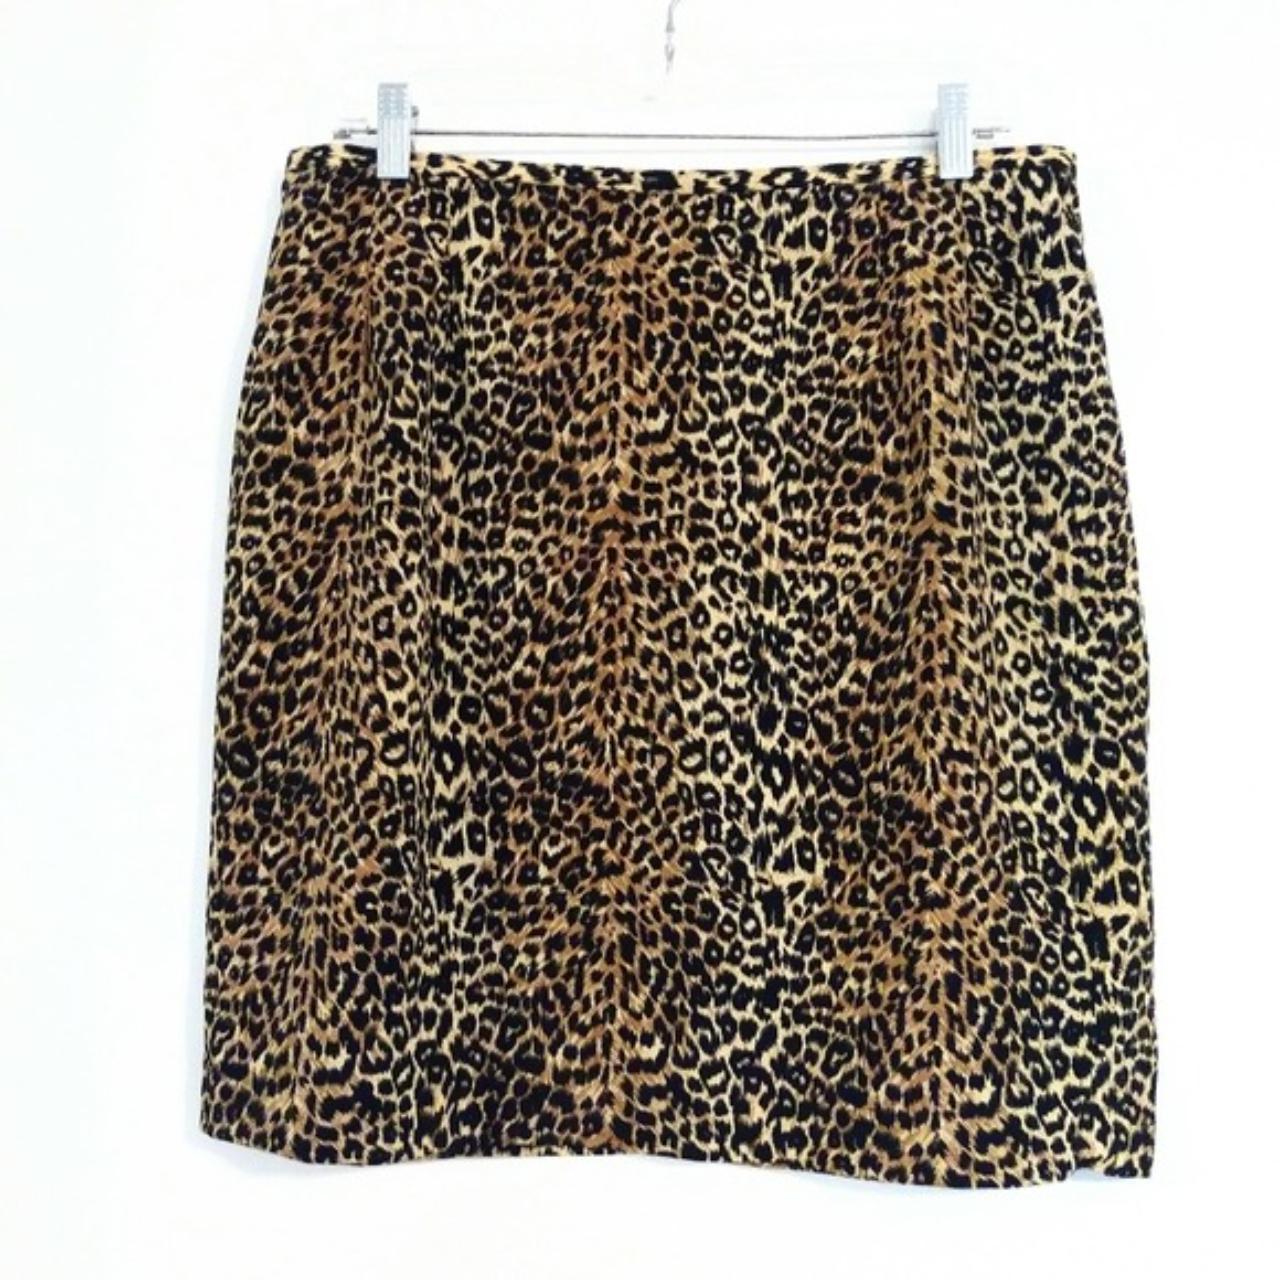 Product Image 1 - Vintage Leopard Print Mini Skirt